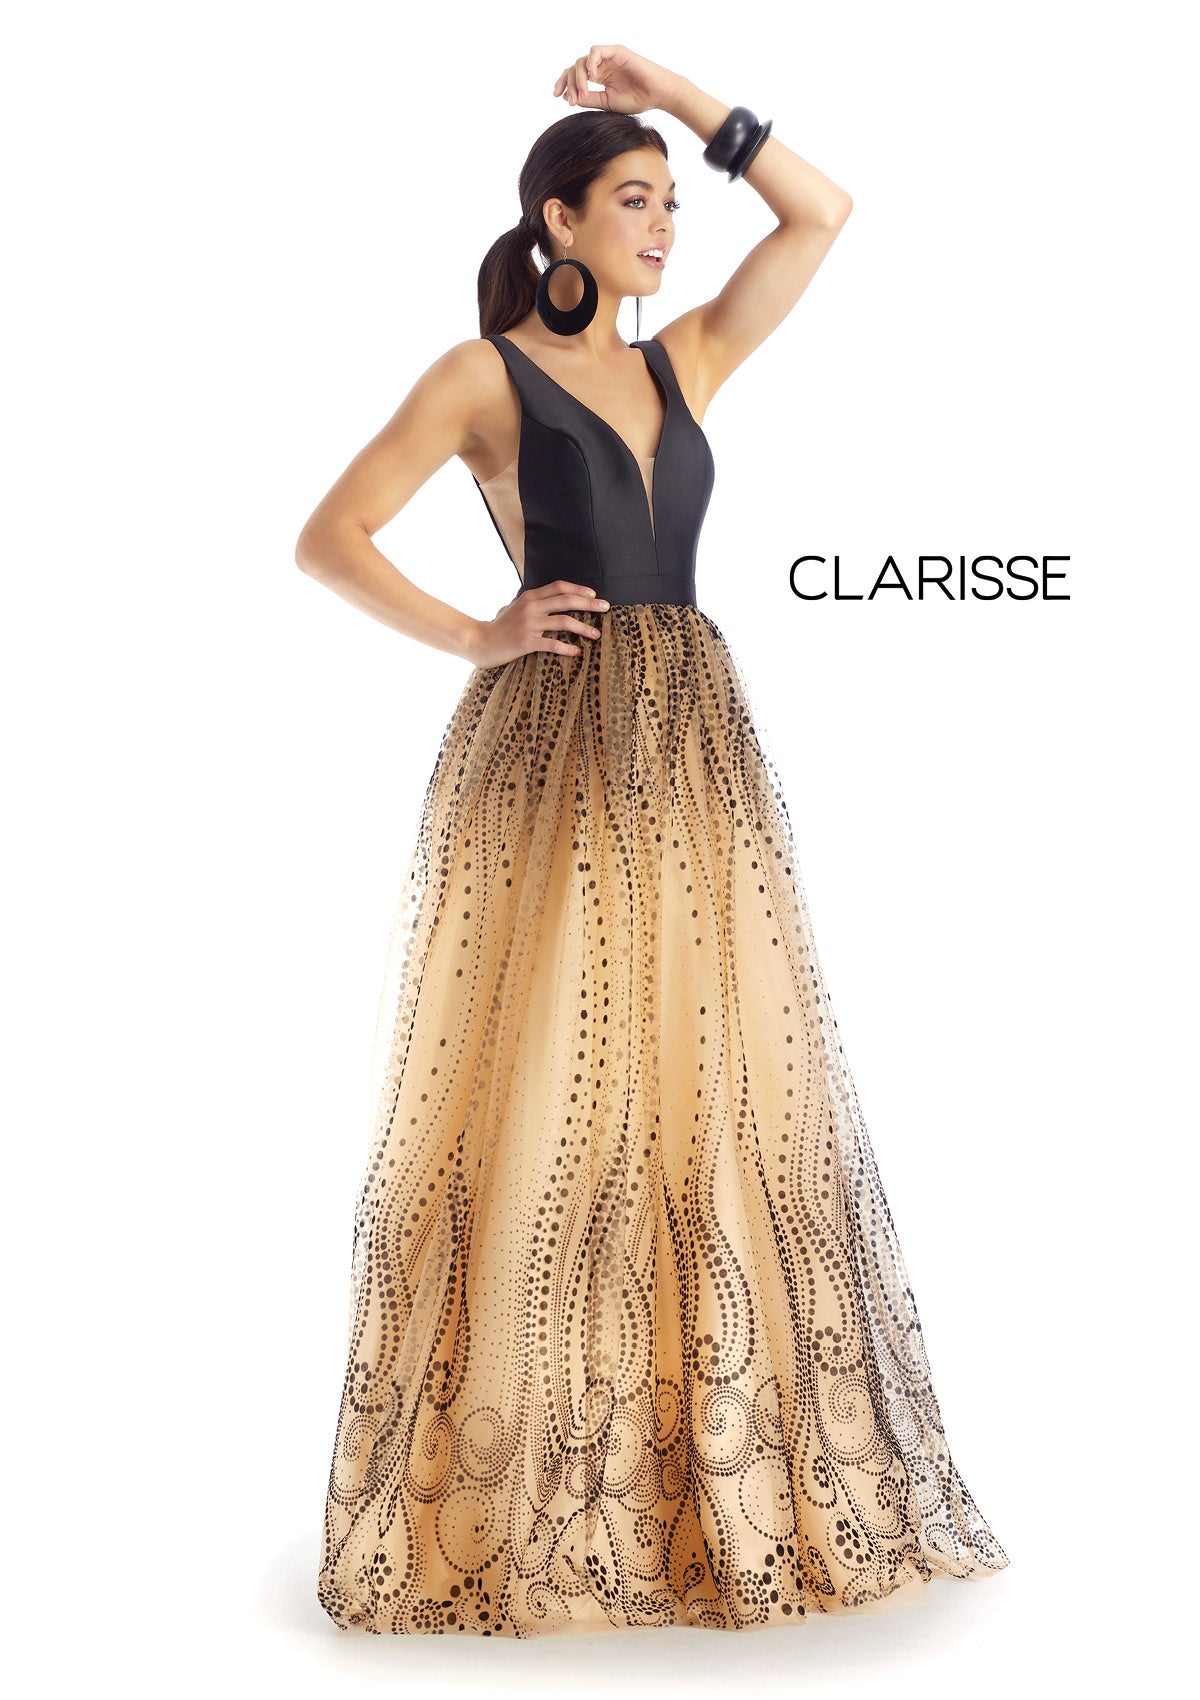 Style #5104 Clarisse